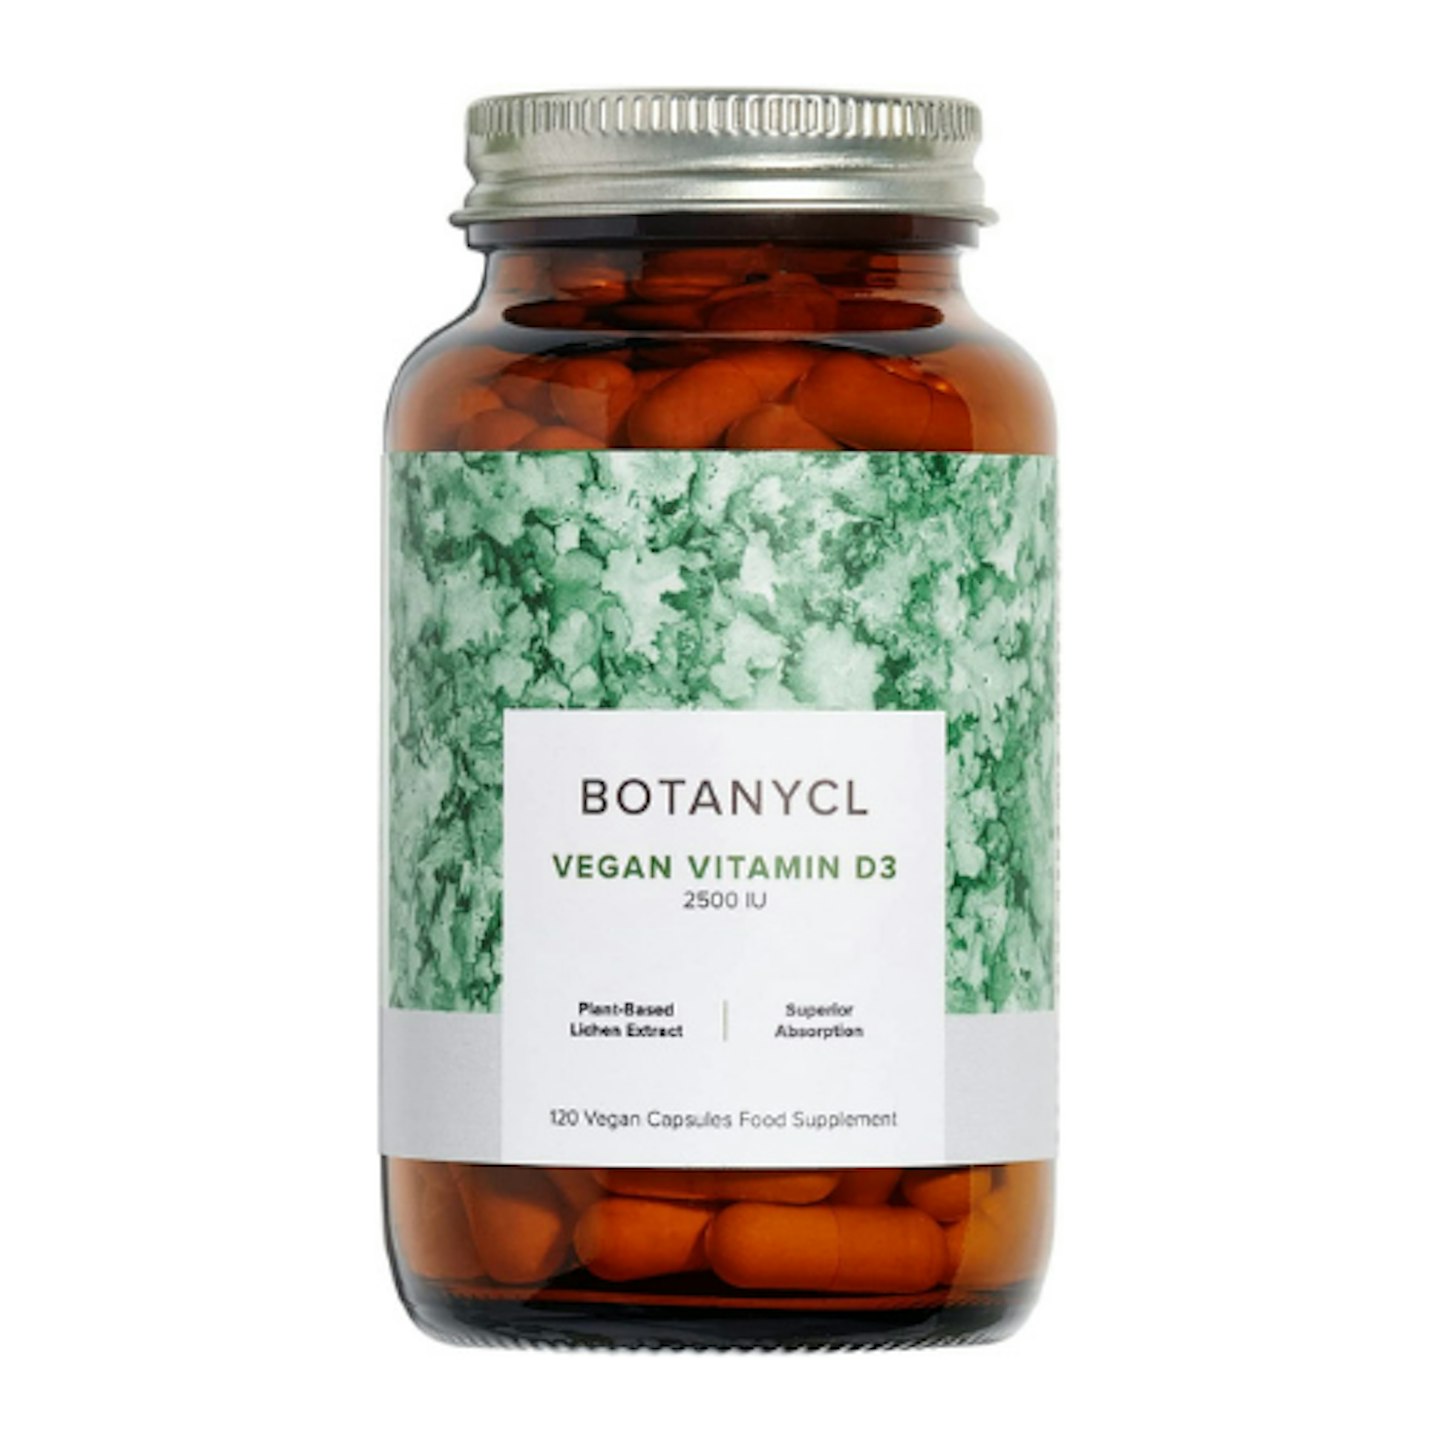 Botanycl Vegan Vitamin D3 Supplements